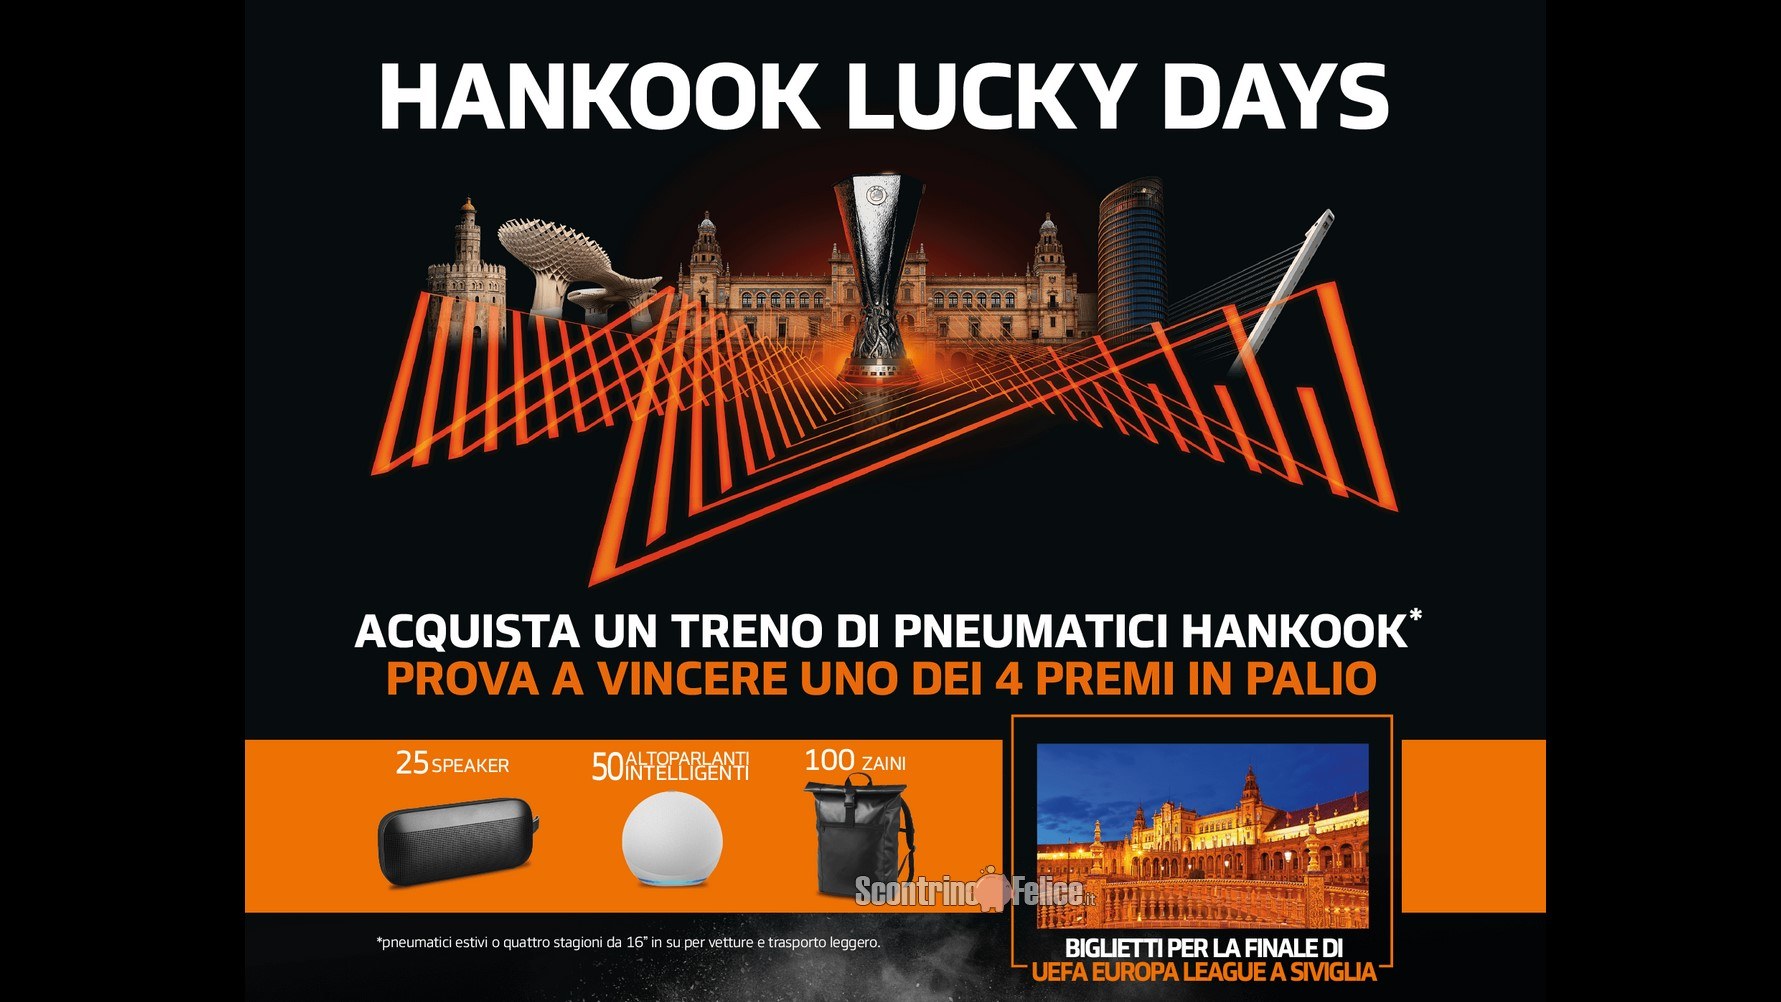 Concorso “Hankook Lucky Days”: vinci zaini brandizzati, Amazon Echo, Speaker Bose e la Finale di UEFA Europa League